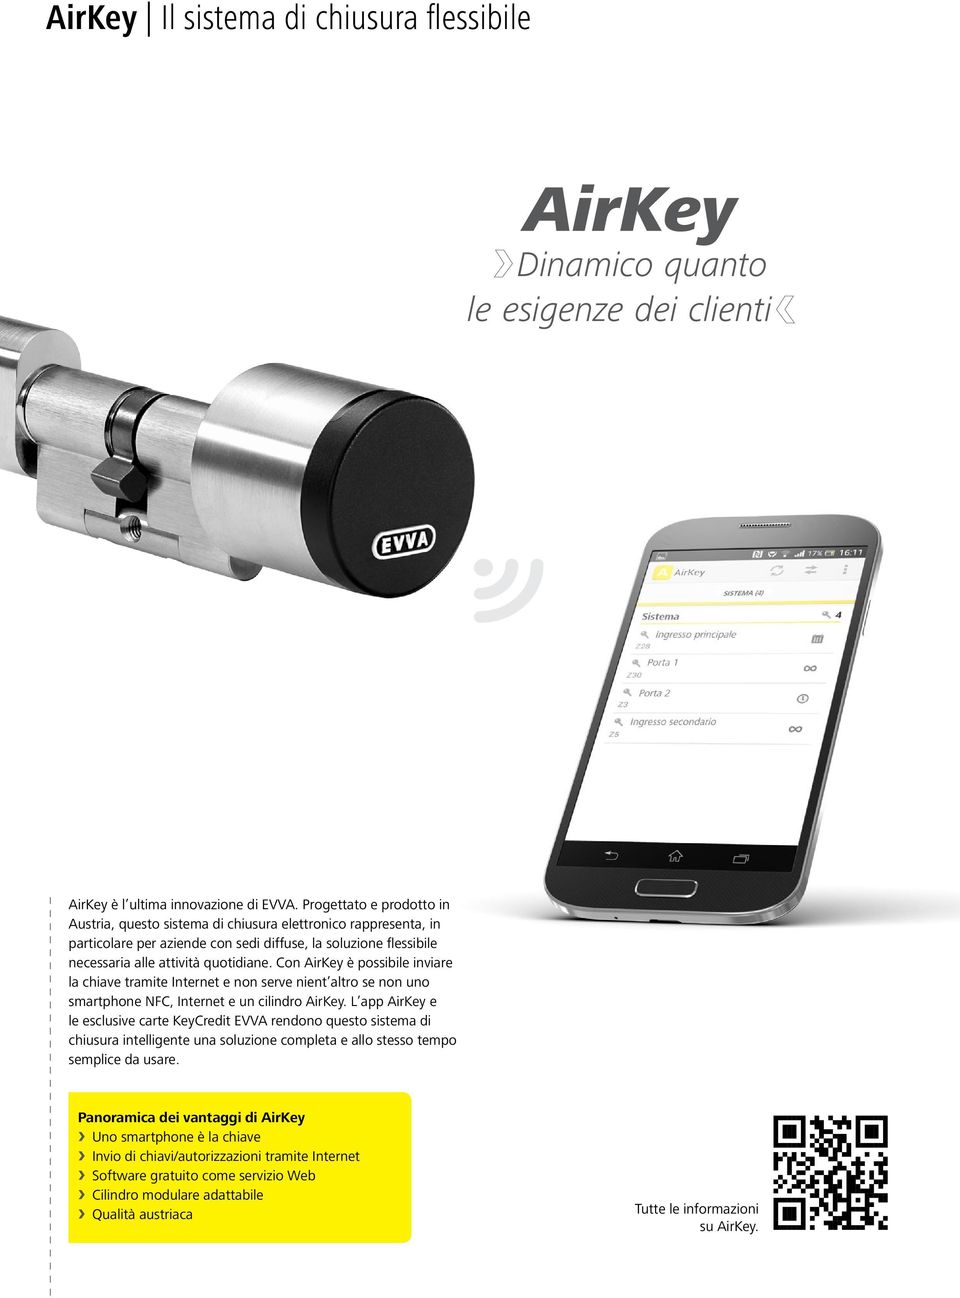 Con AirKey è possibile inviare la chiave tramite e non serve nient altro se non uno smartphone NFC, e un cilindro AirKey.